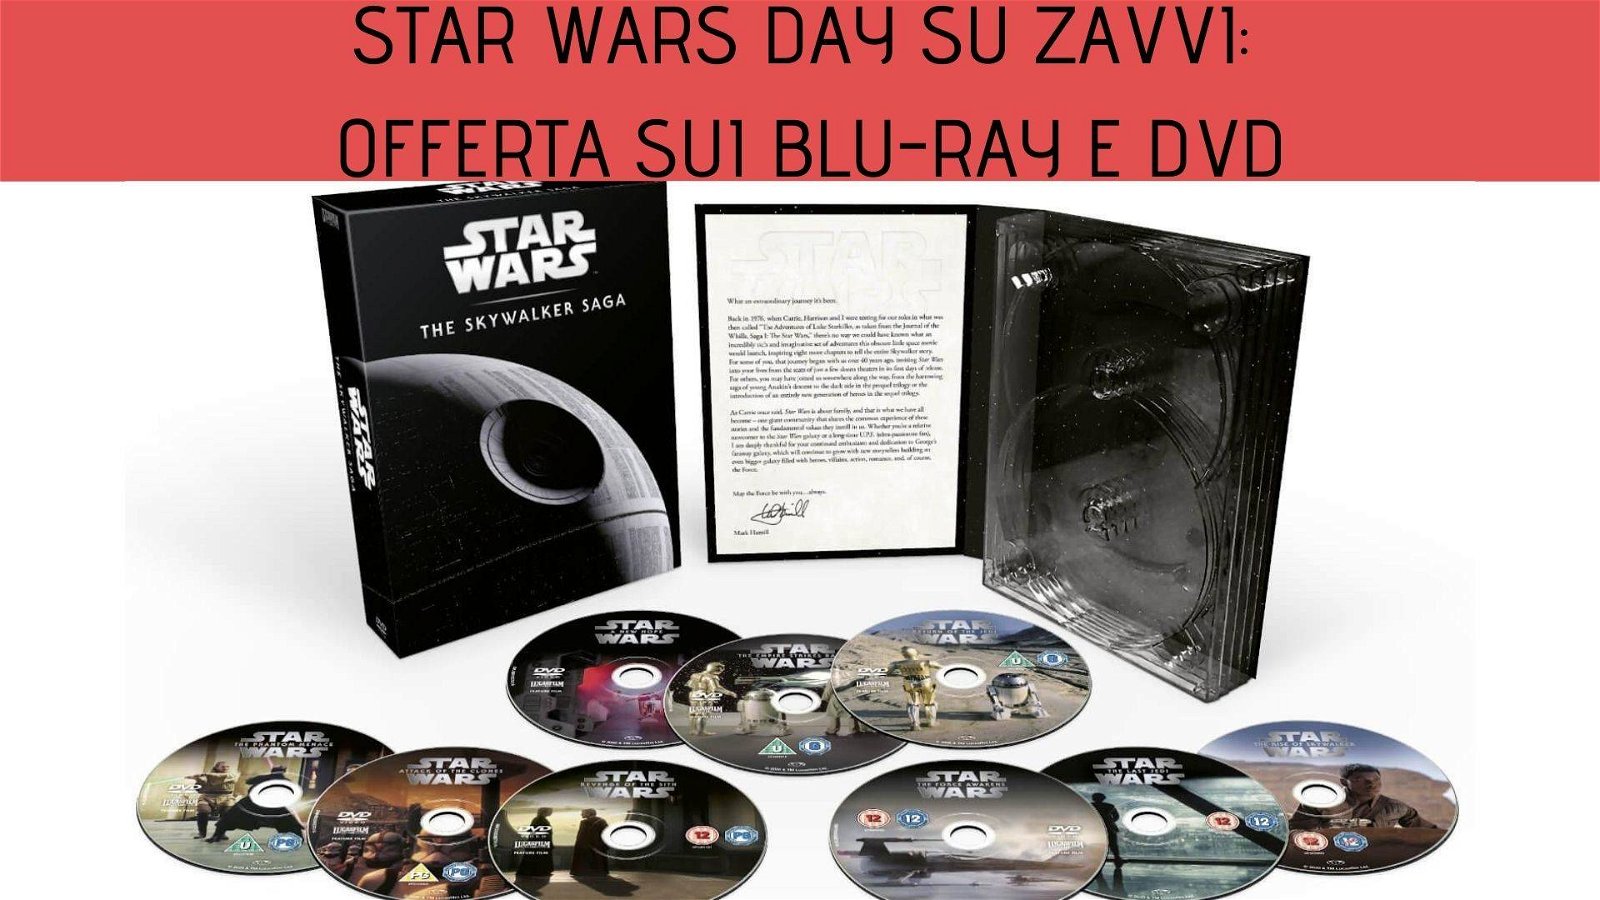 Immagine di Star Wars Day: tante offerte sui blu-ray e DVD da Zavvi